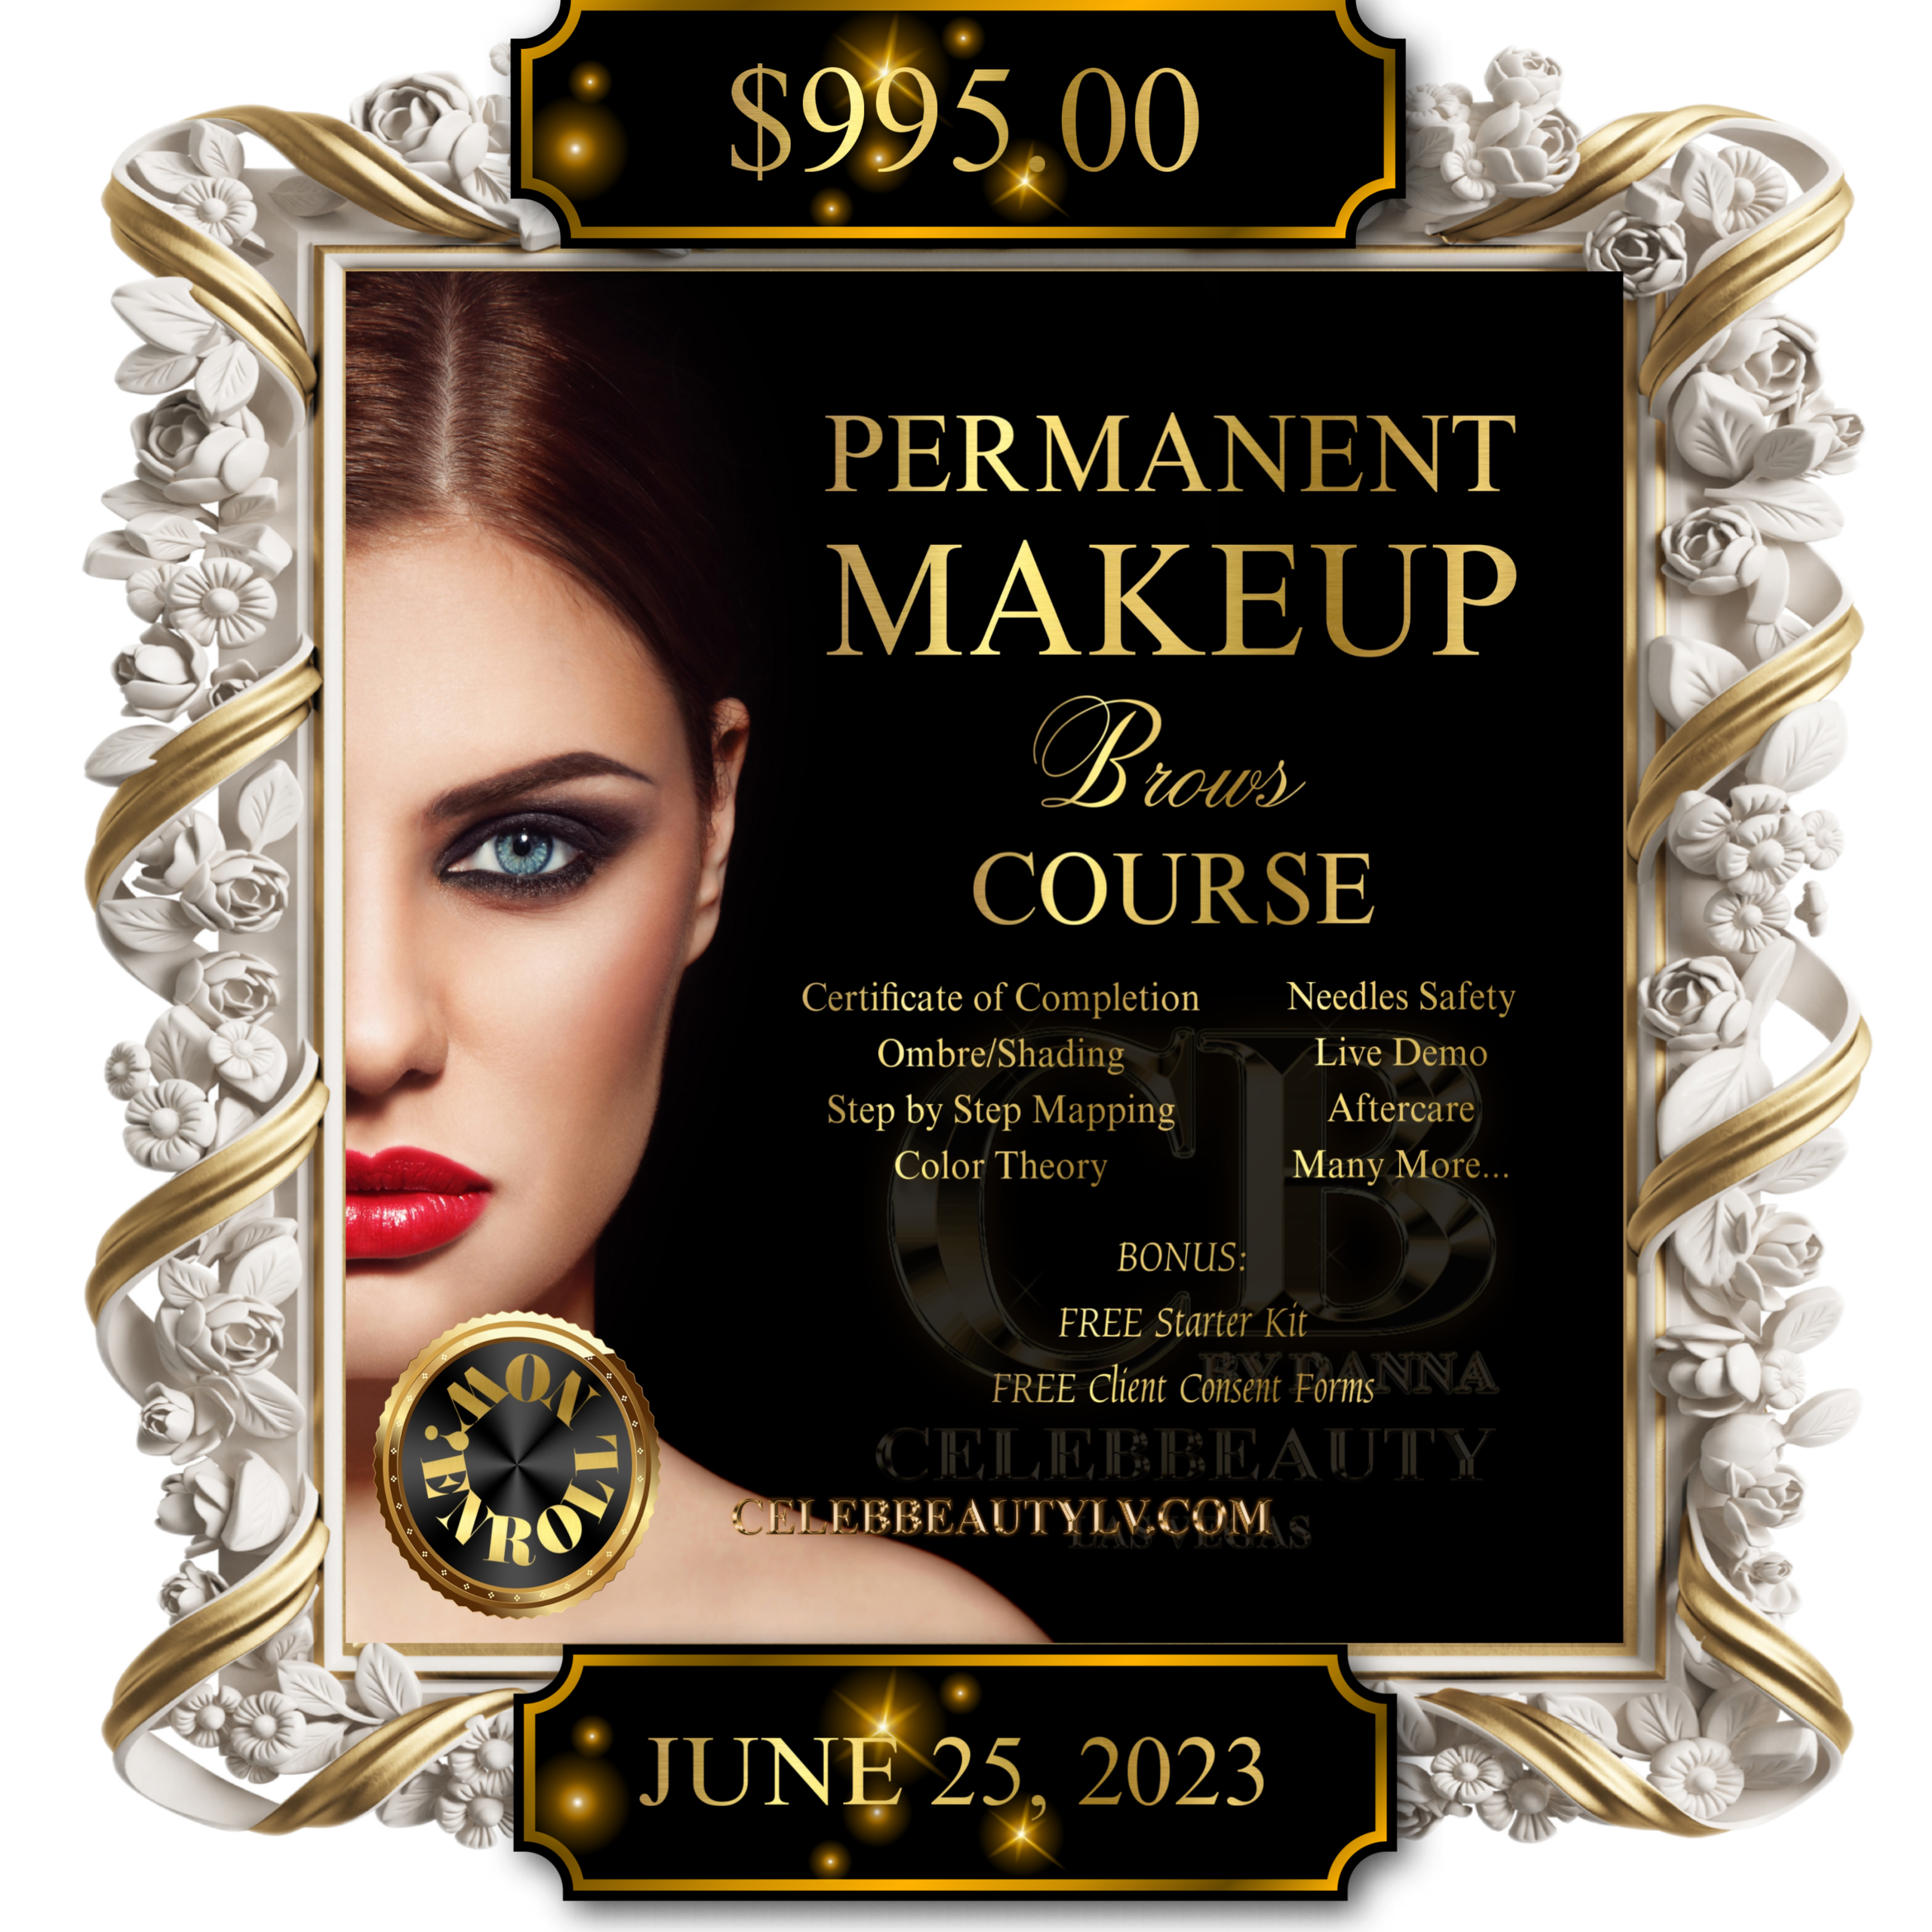 Permanent Makeup Course Celebbeauty